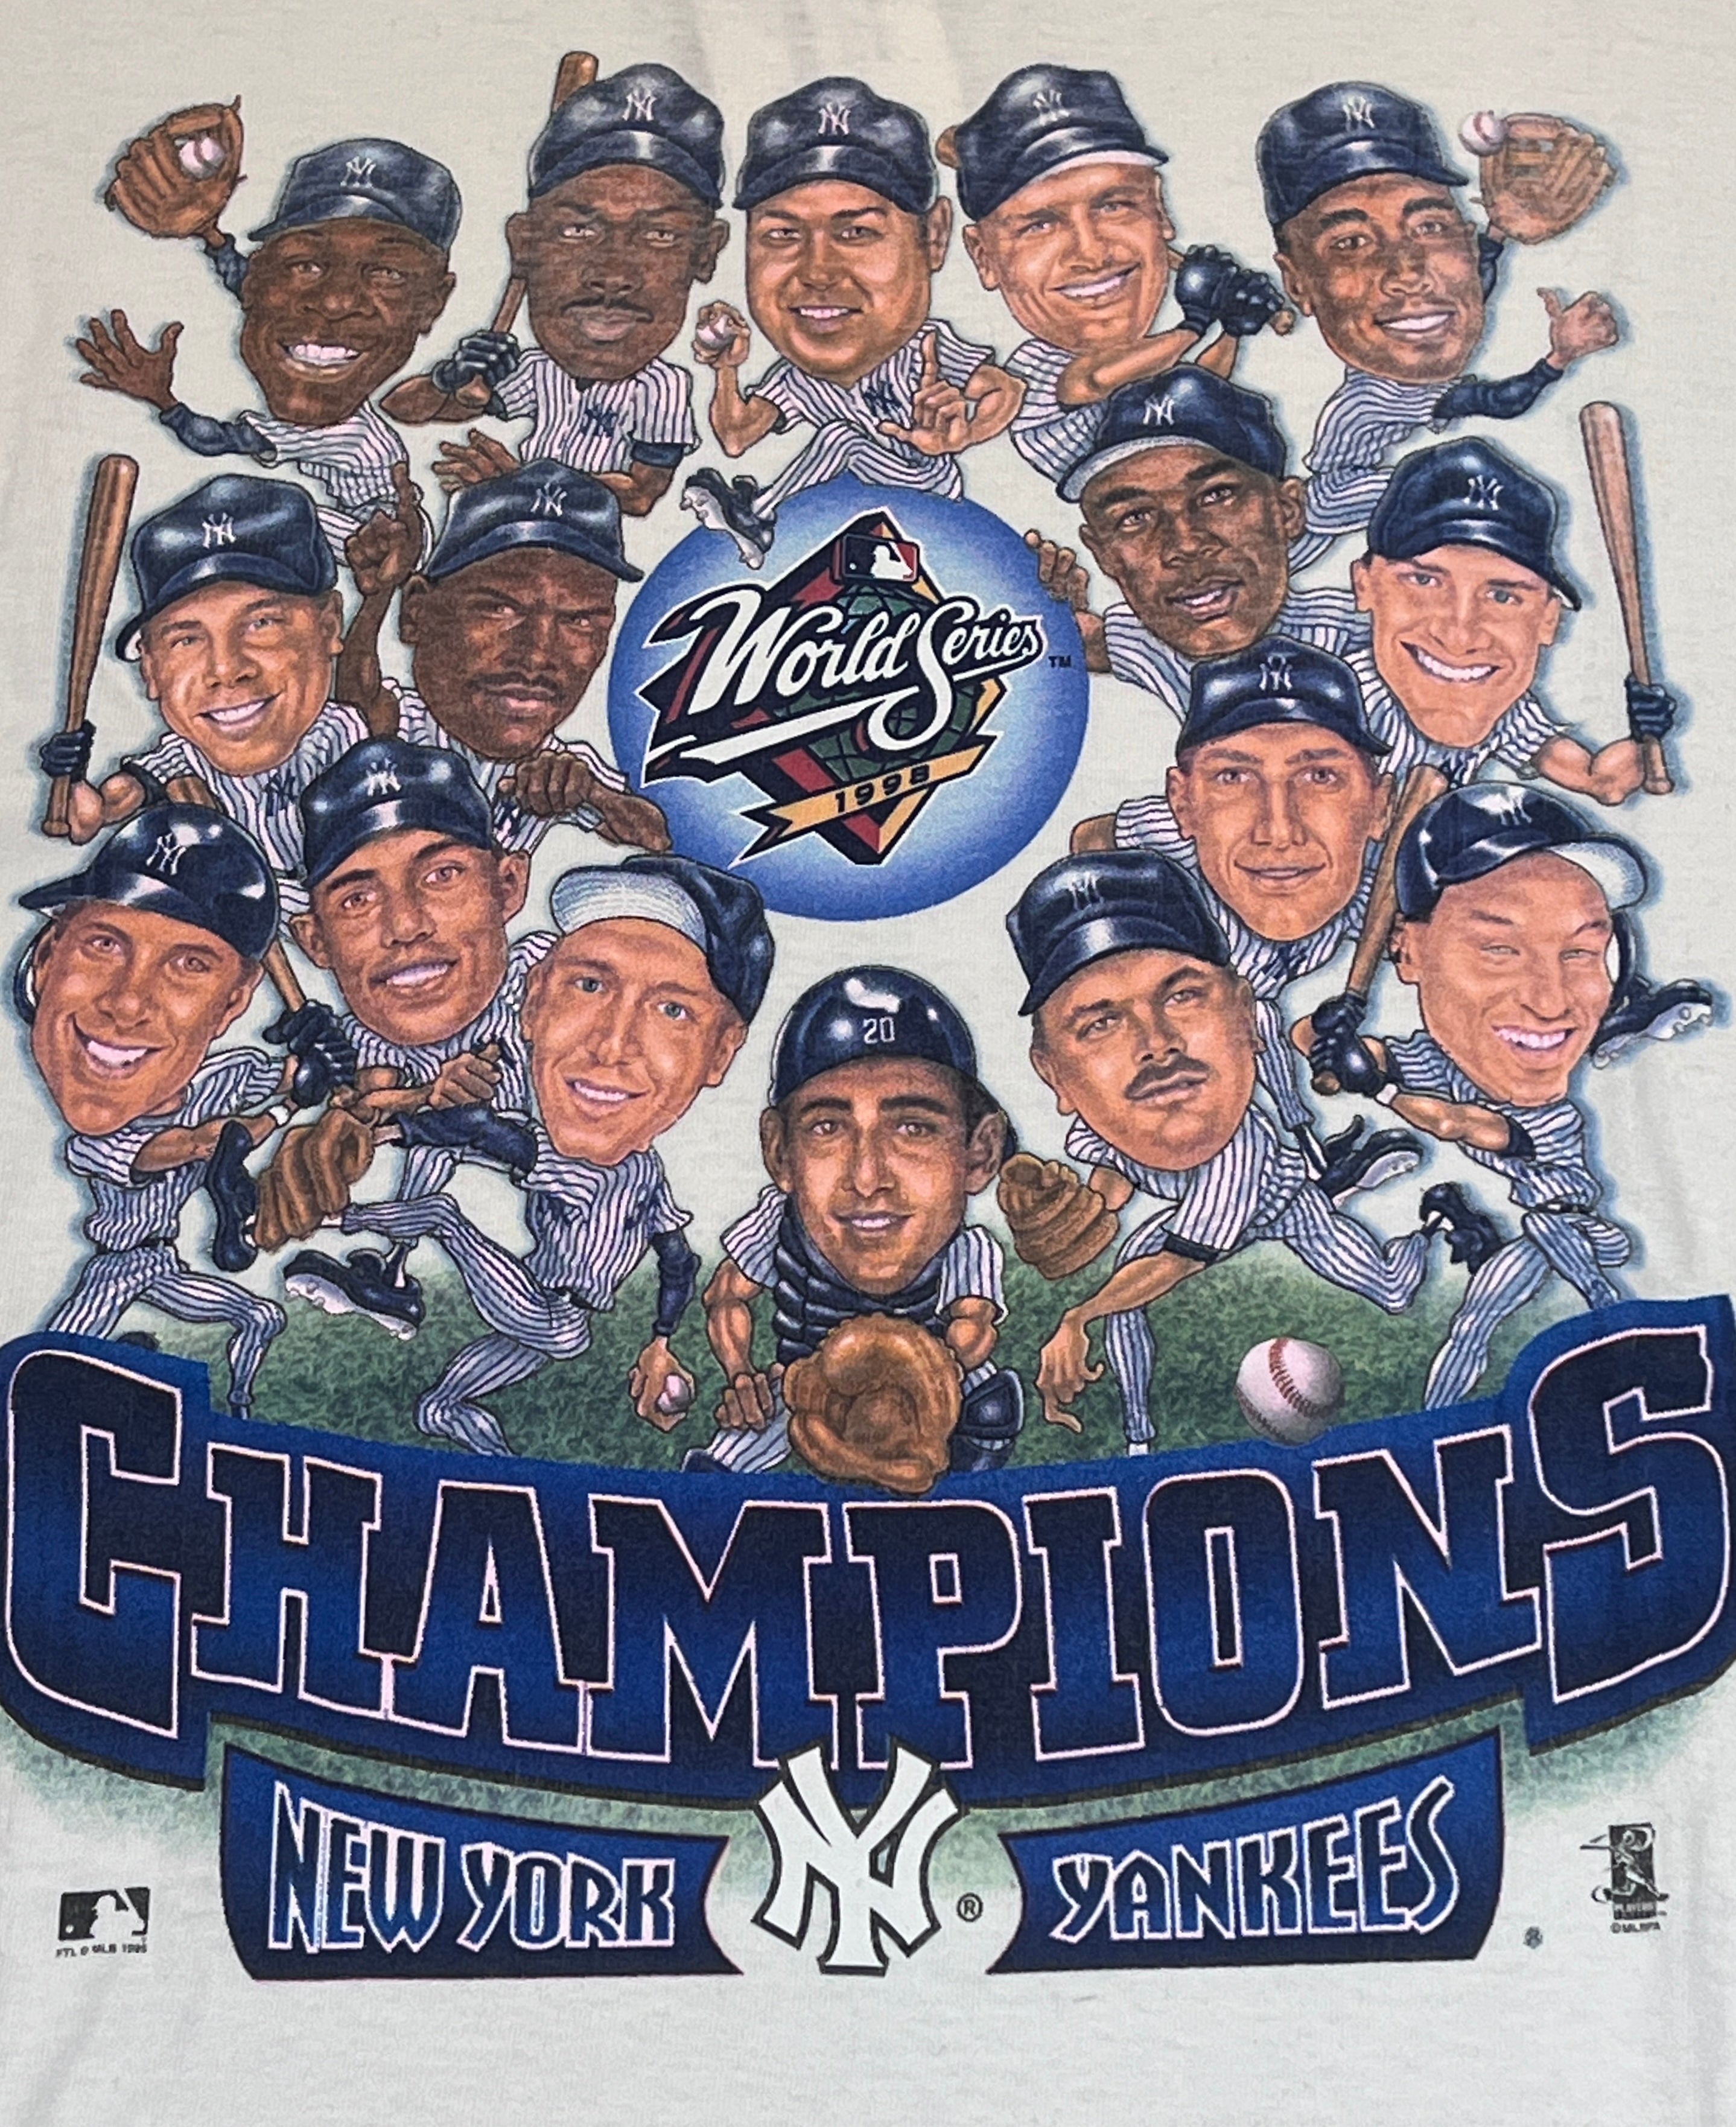 1998 World Series Champion New York Yankees.  New york yankees baseball,  New york yankees, Yankees world series